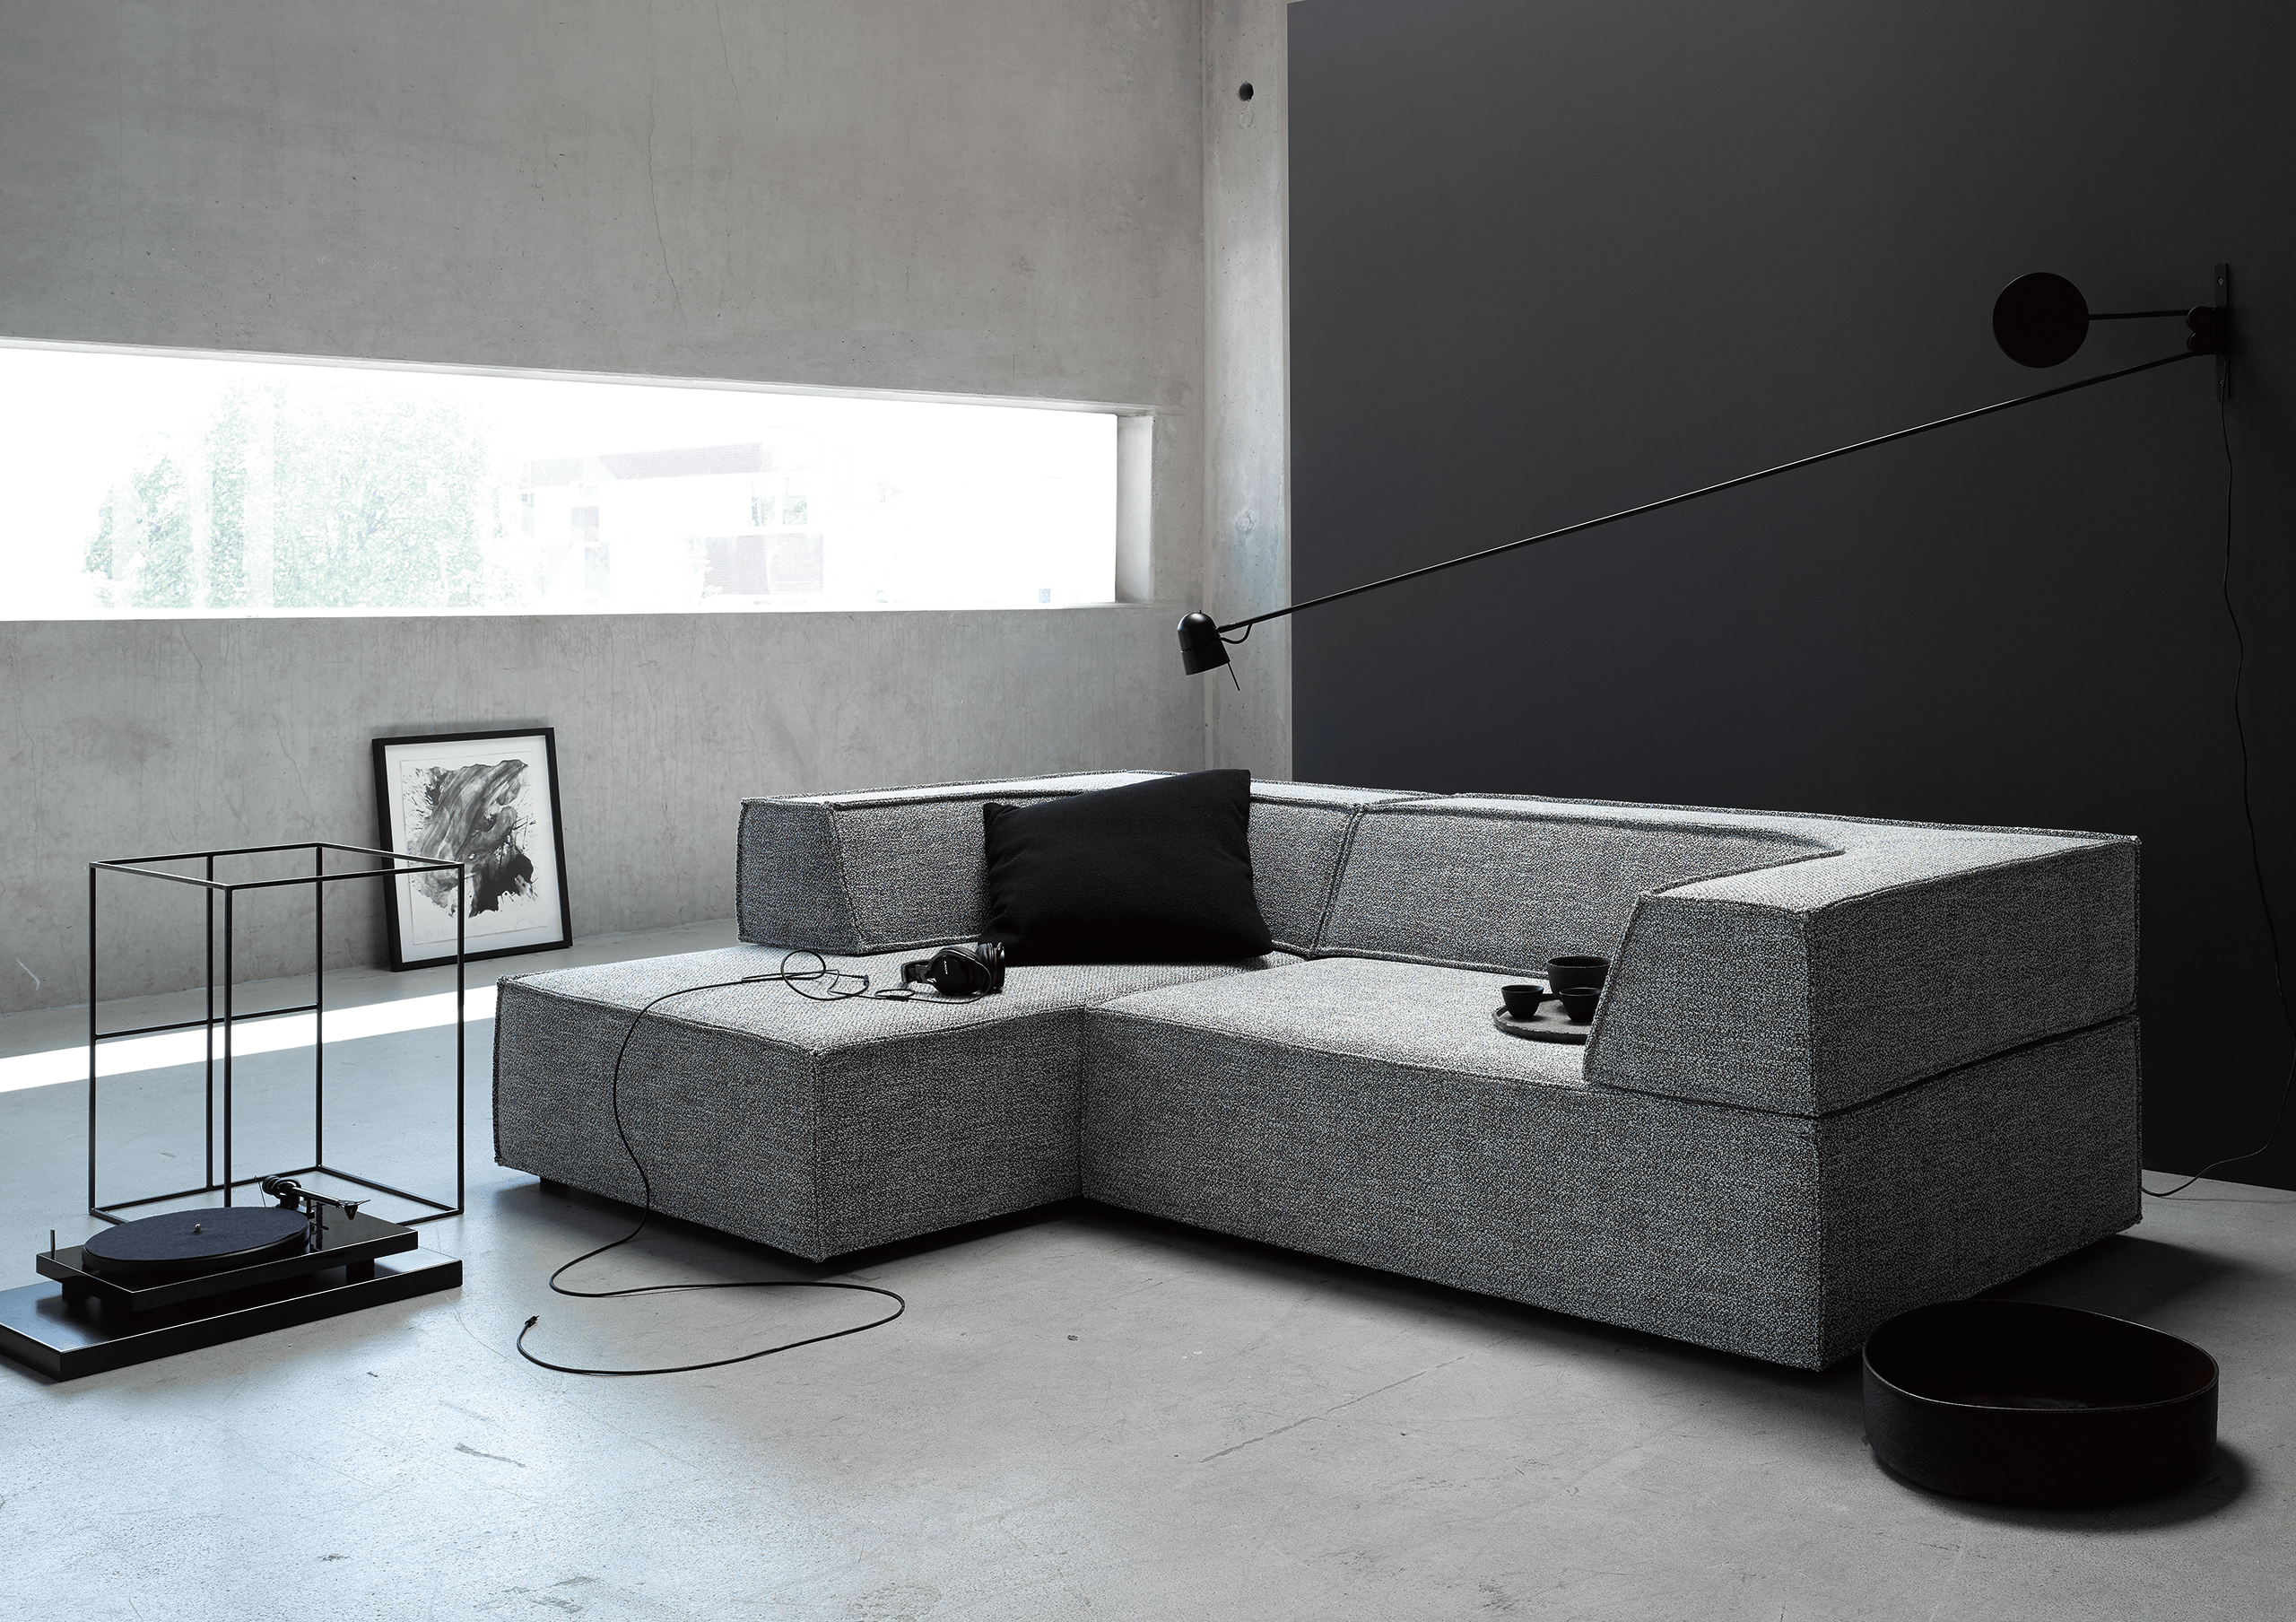 stilvolle möbel von premium-designermarken | einrichtungshaus holz